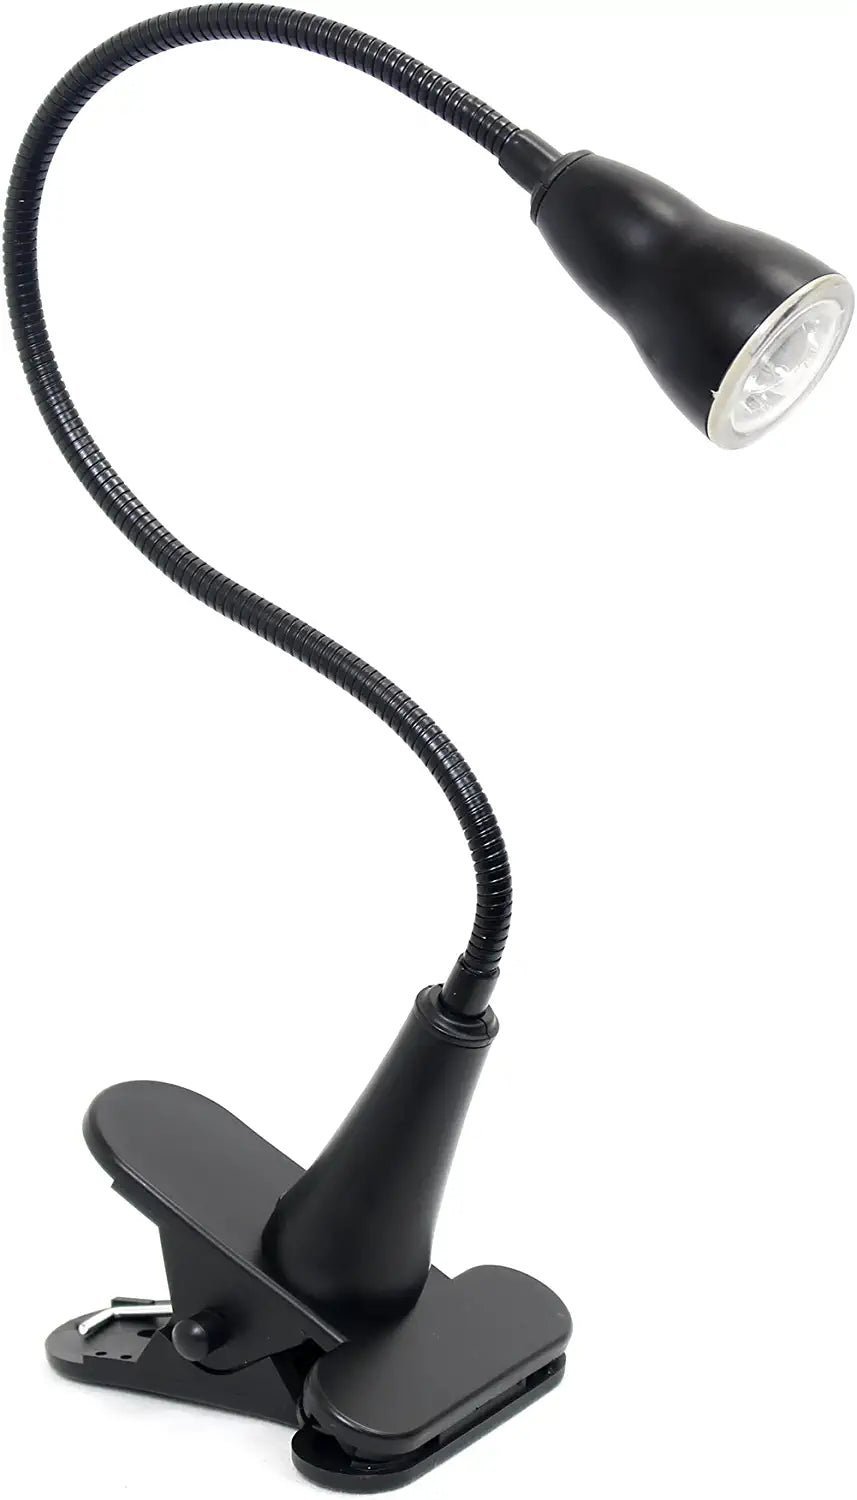 Simple Designs LD2015-BLK Basic 1W LED Gooseneck Flexible Clip Light Desk Lamp, Black Visit the Simple Designs Store